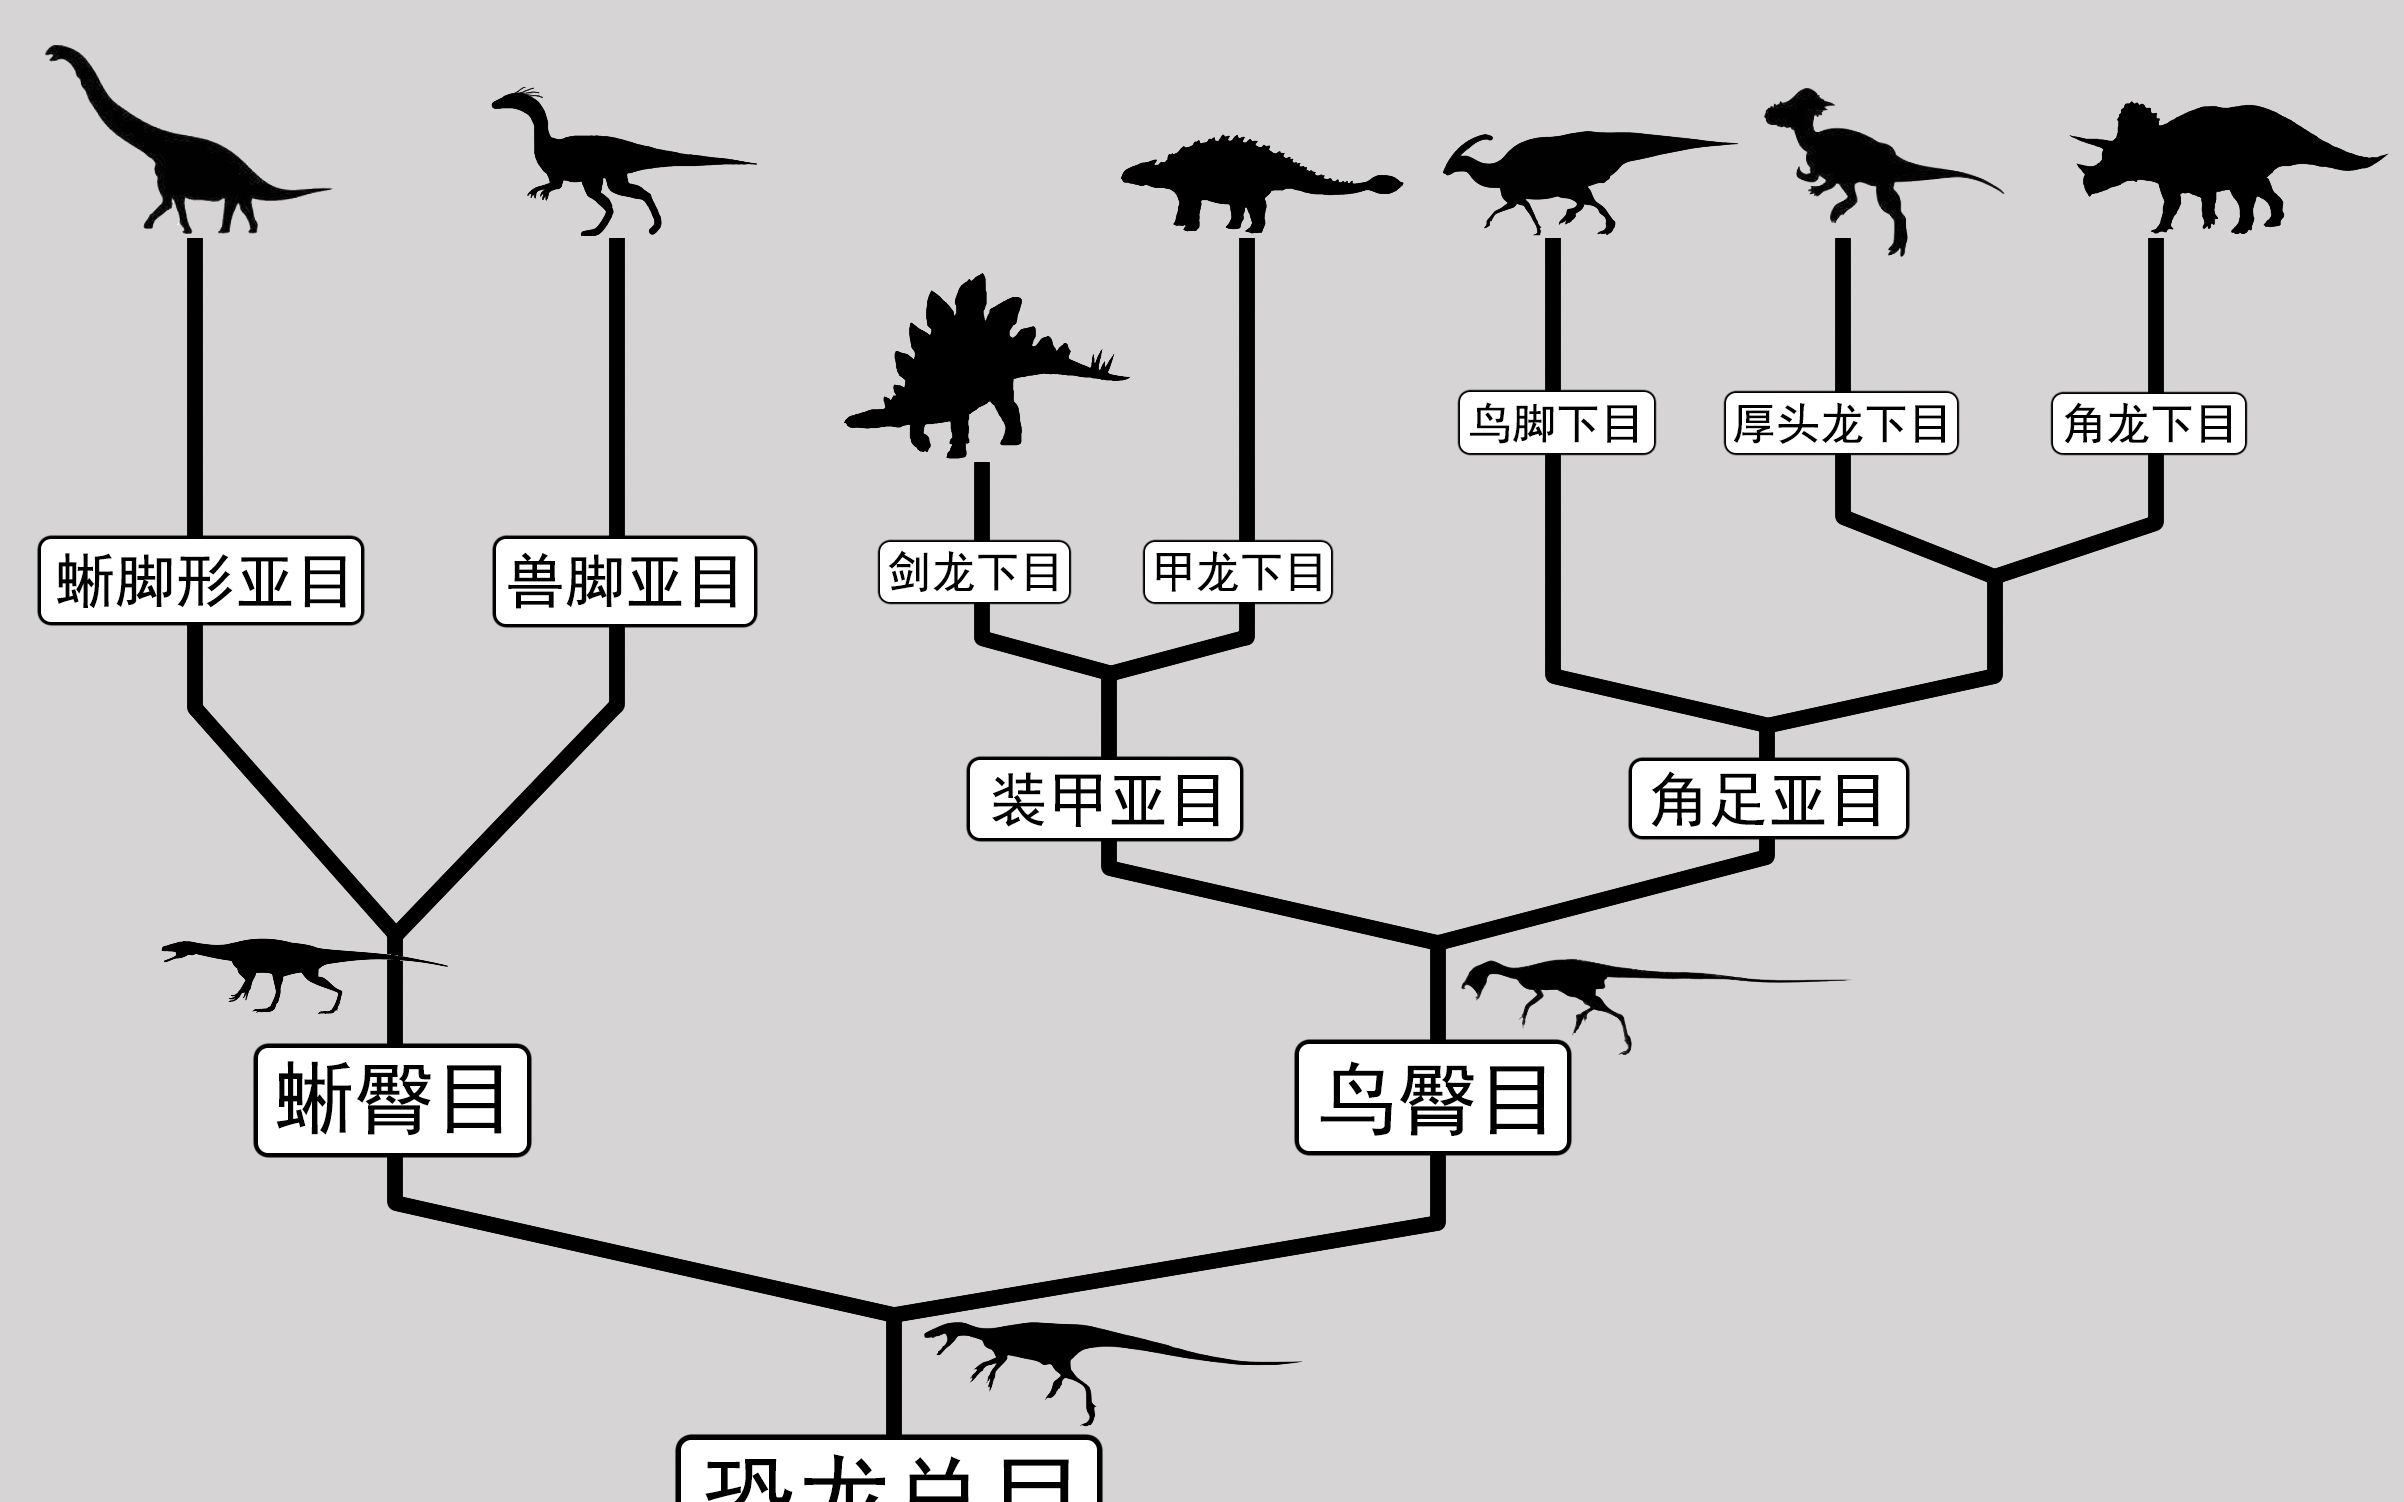 常见恐龙种类介绍图片